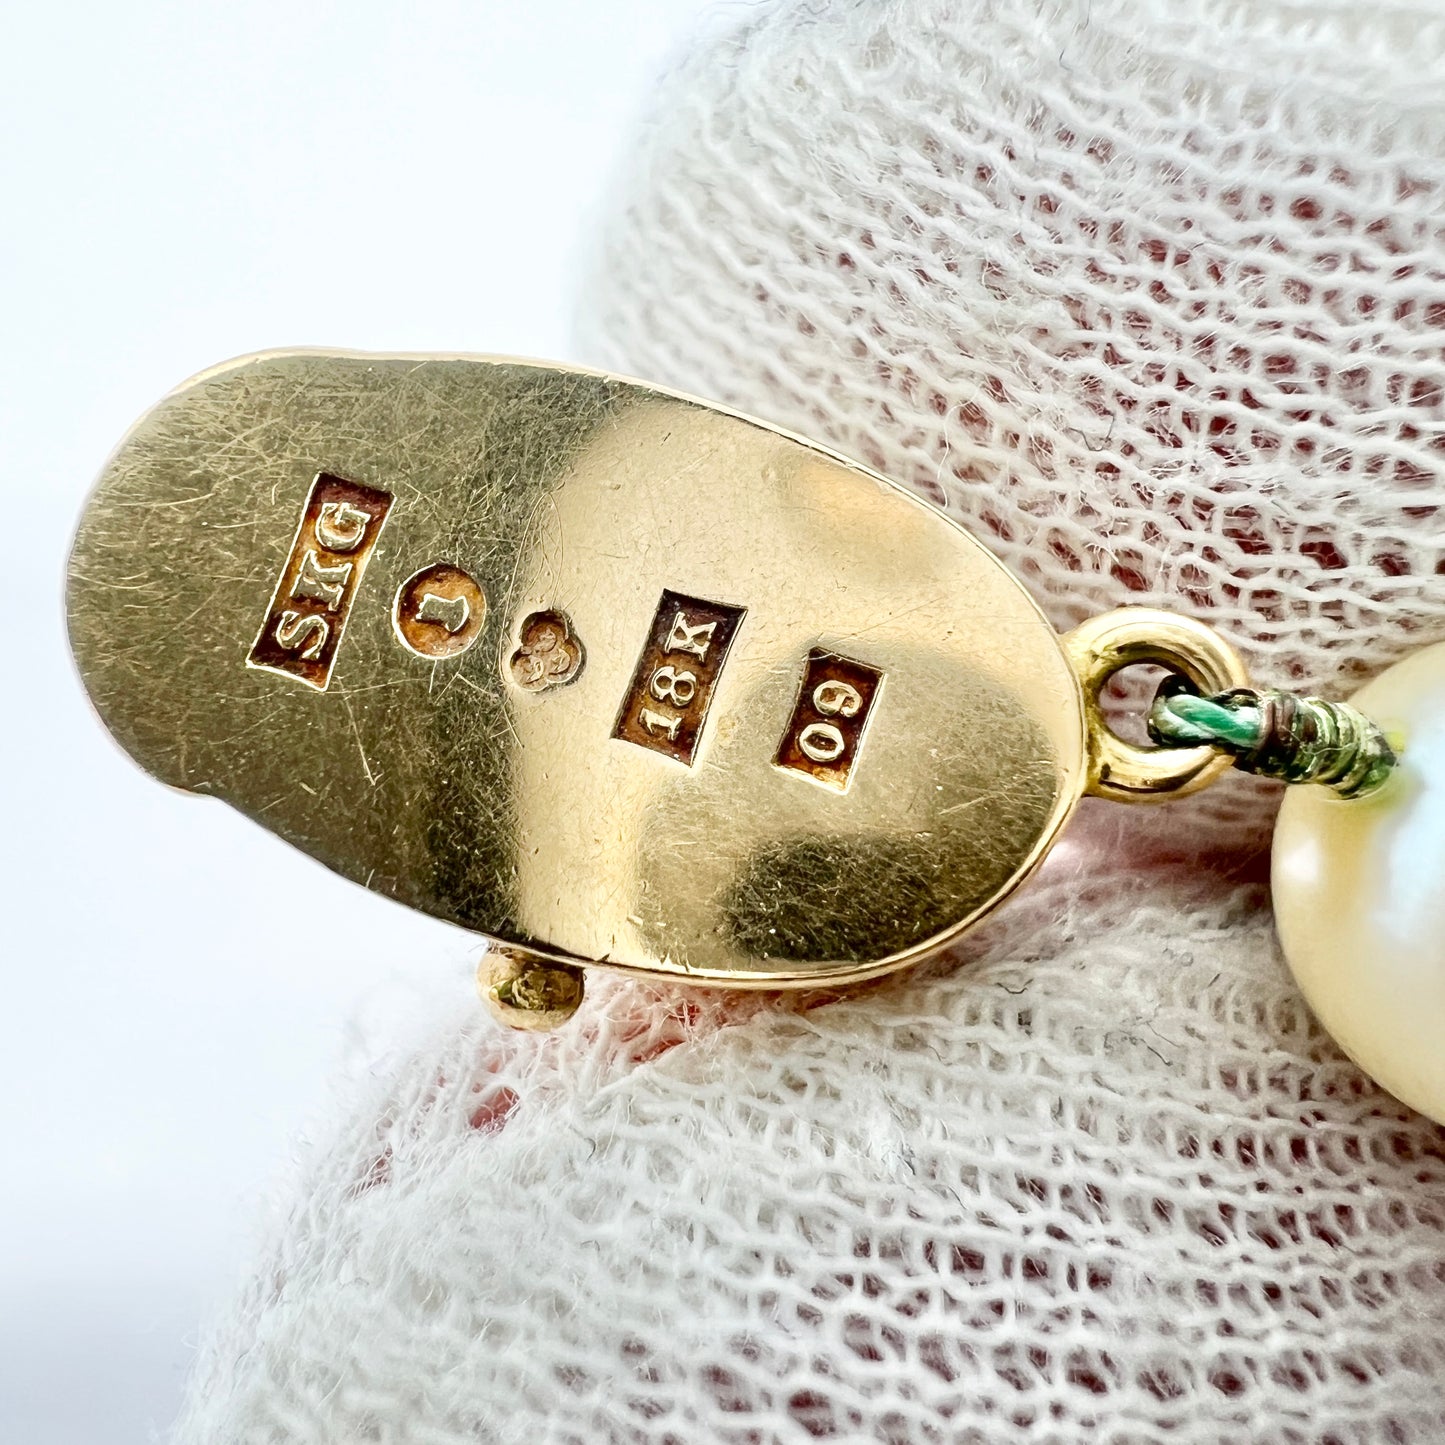 Sten Karlsson, Sweden 1964. Vintage 18k Gold Moonstone Cultured Pearl Necklace.